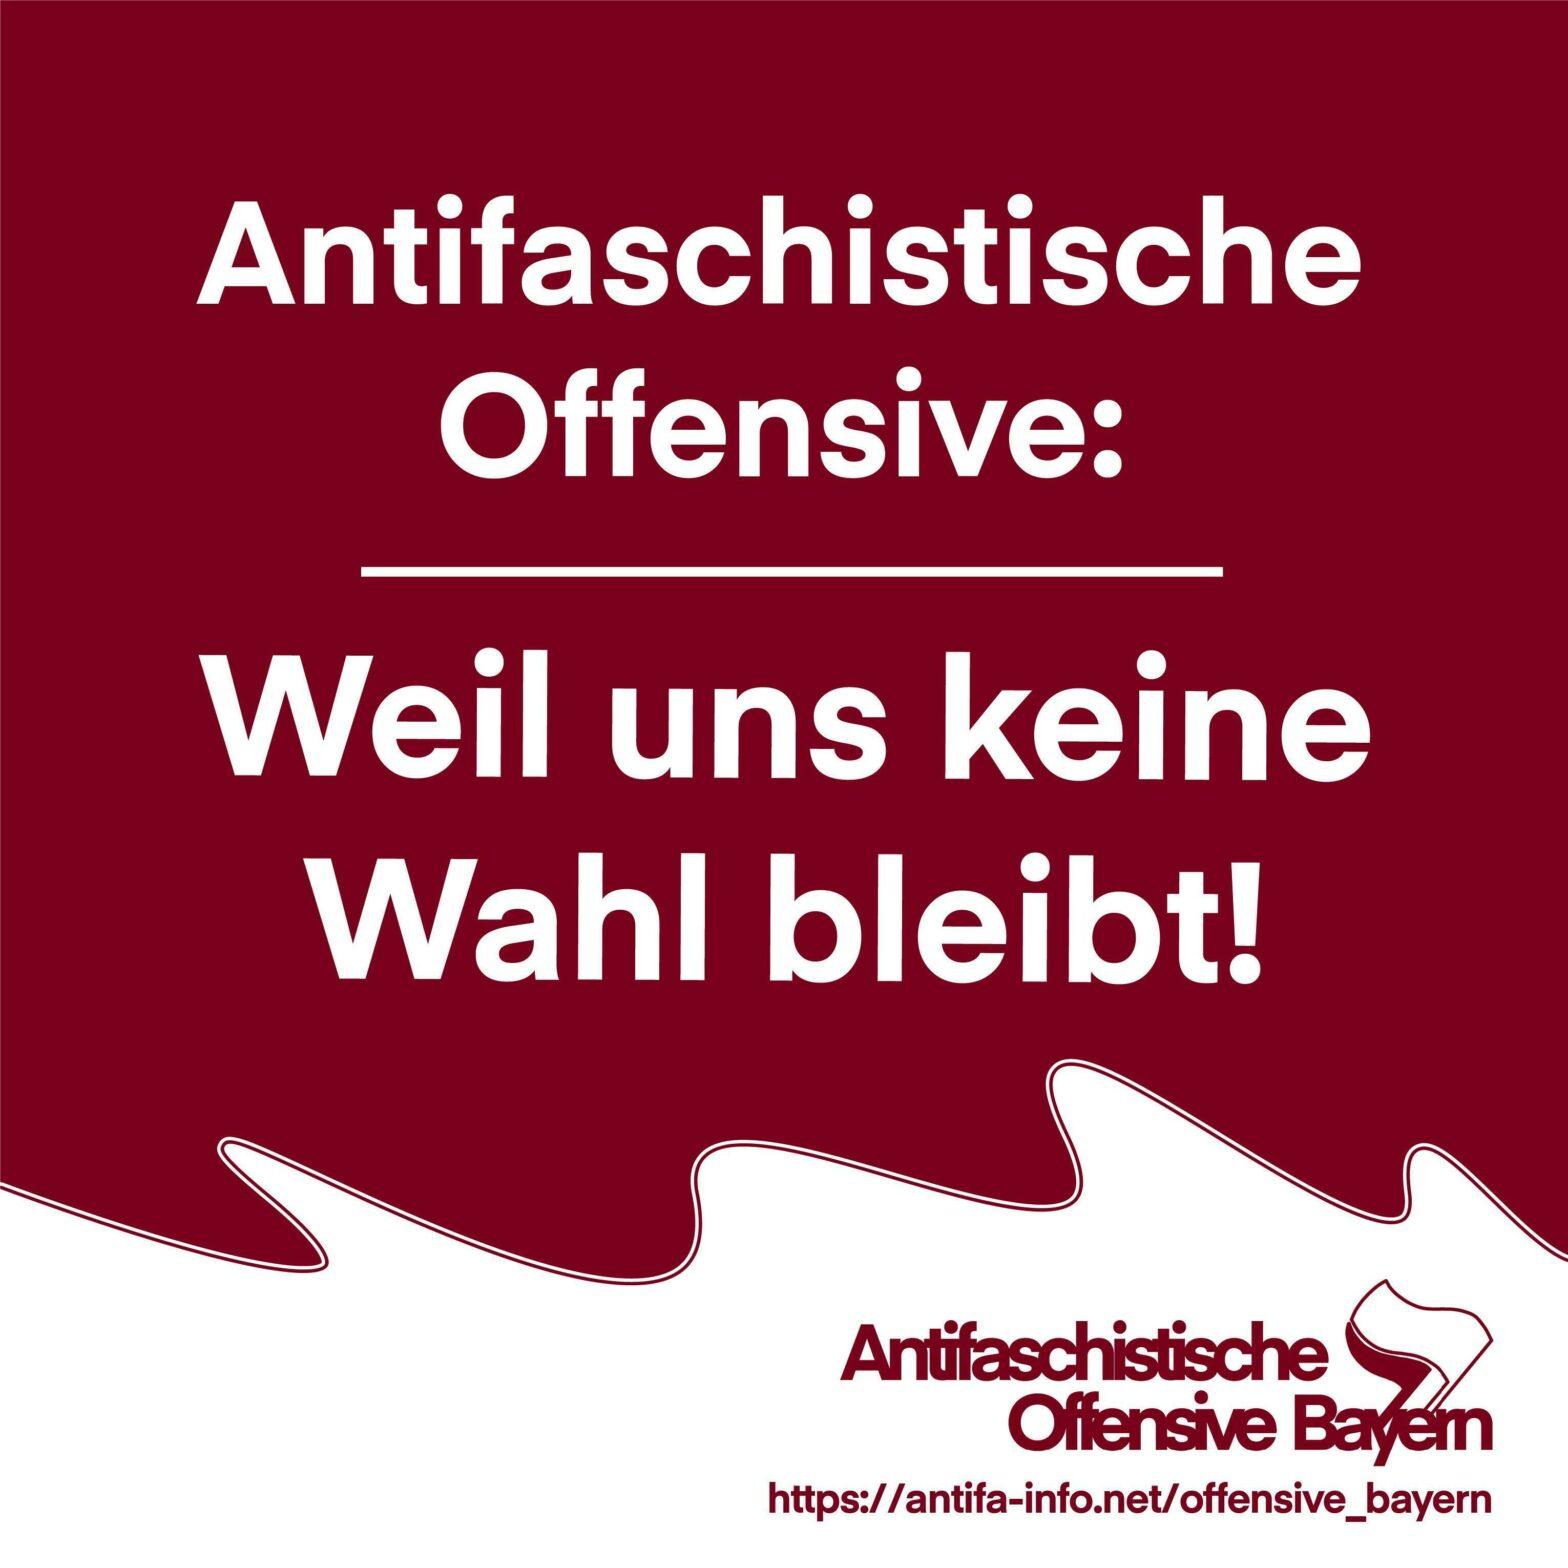 Antifaschistische Wahlkampf-Kampagne startet